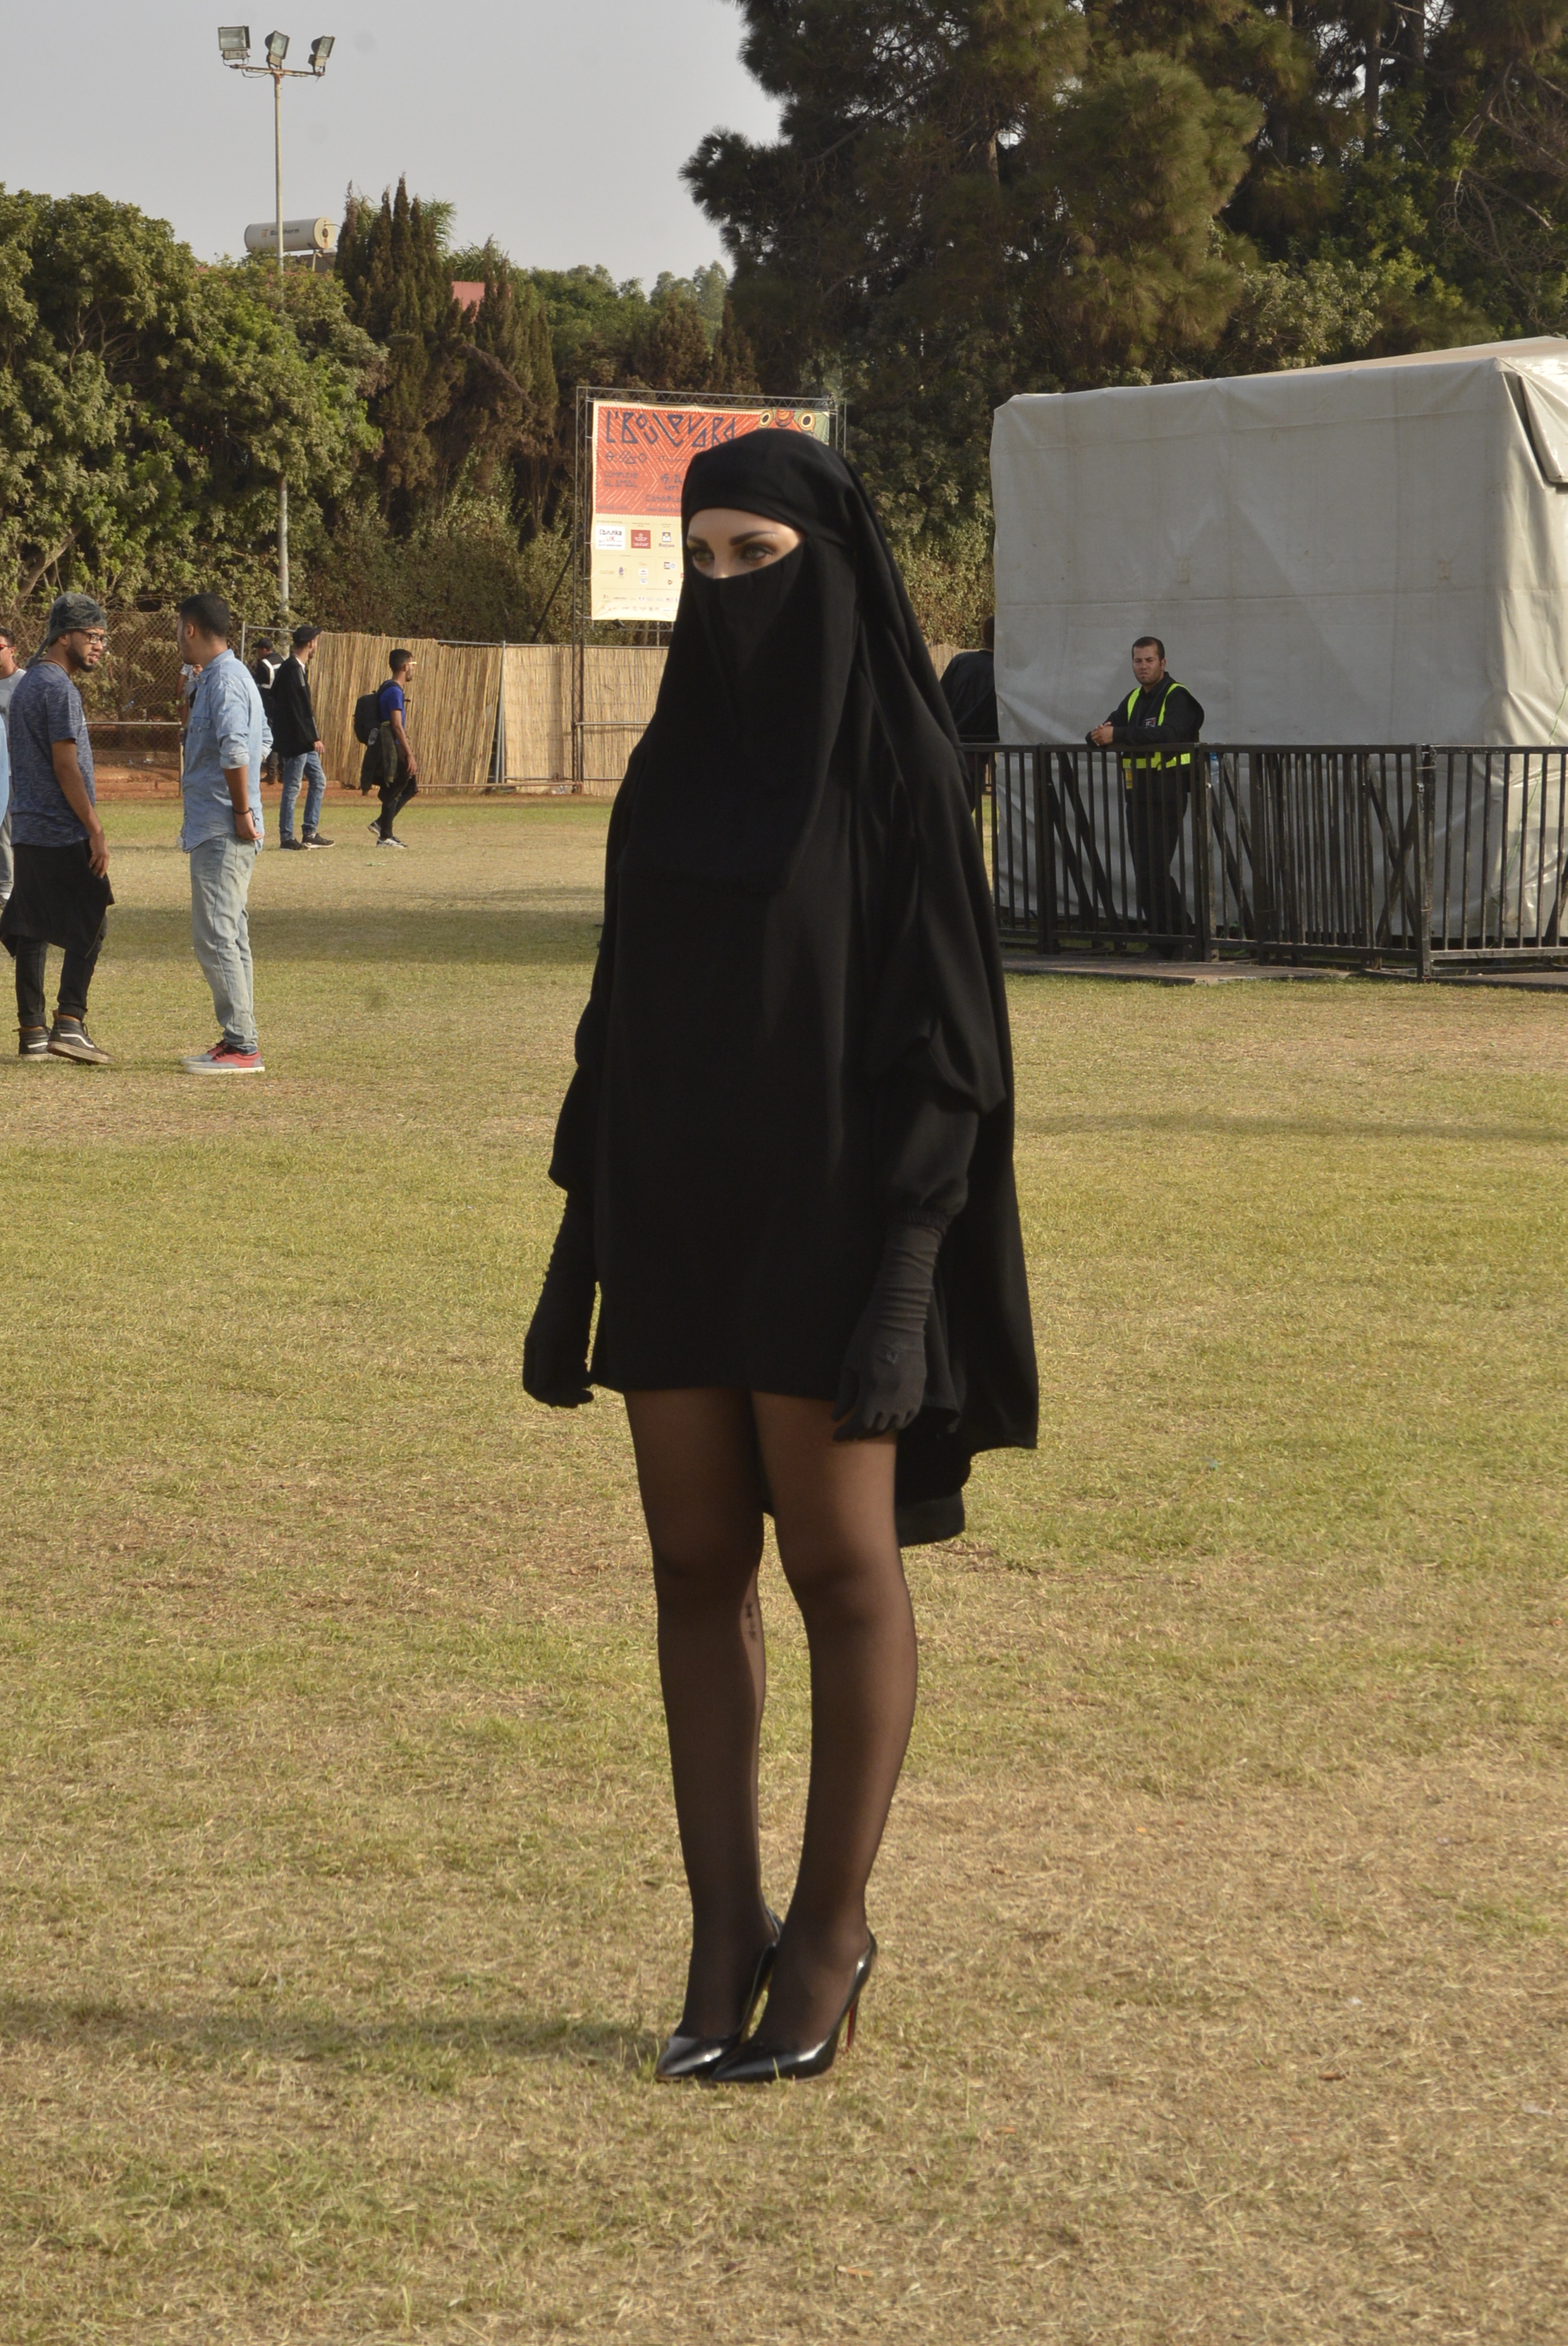 غريب بالصور: فتاة منقبة بساقين عاريتين تثير الجدل في مهرجان شبابي